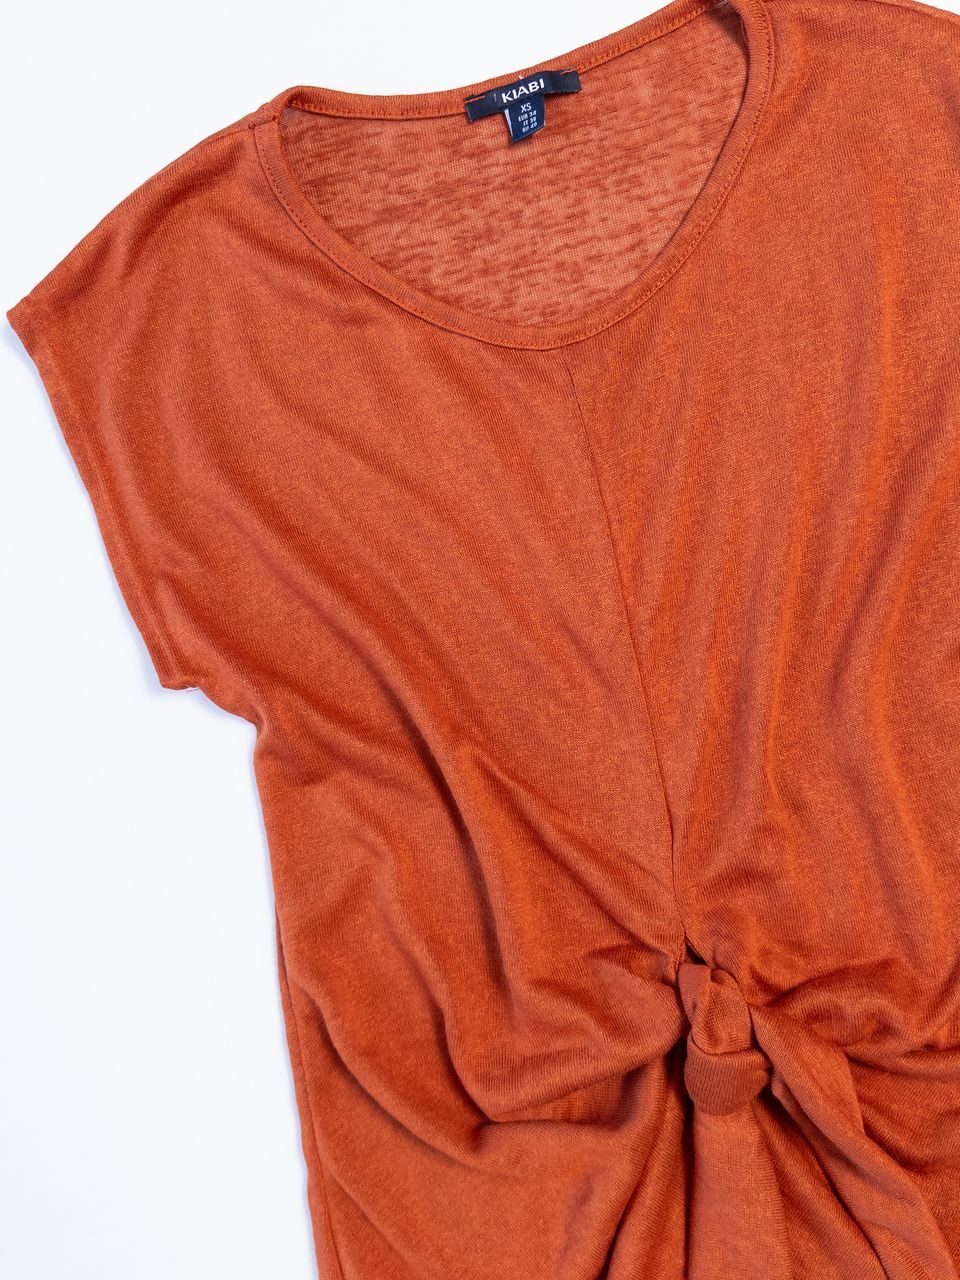 Блуза трикотажная с декоративным узлом цвет терракотовый размер EUR 34 (rus 40) KIABI